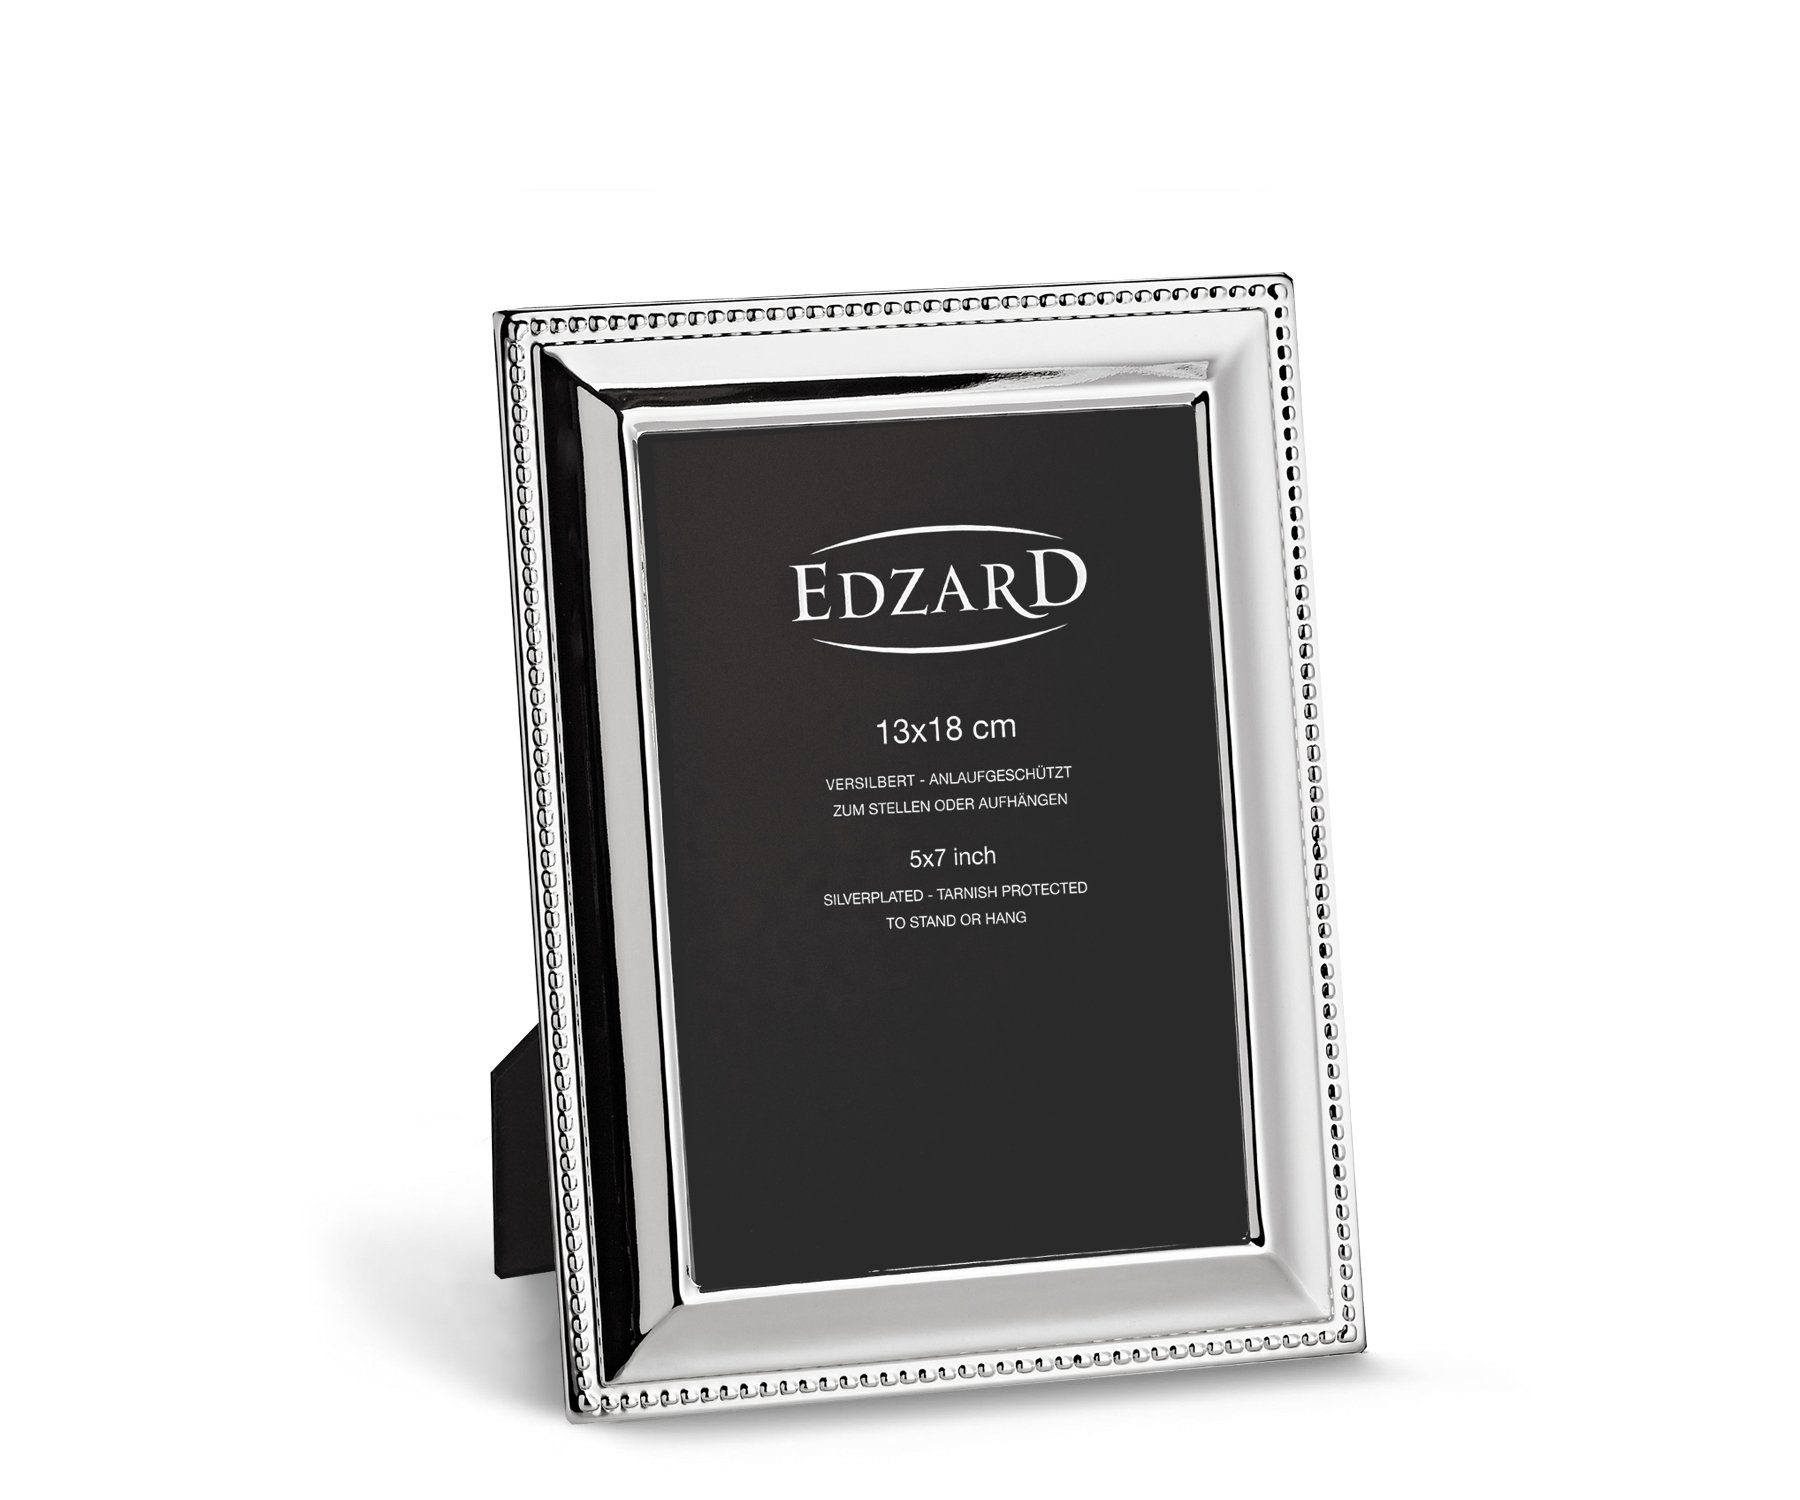 EDZARD Bilderrahmen Perla, Versilbert und anlaufgeschützt, für 13x18 cm Bilder - Fotorahmen